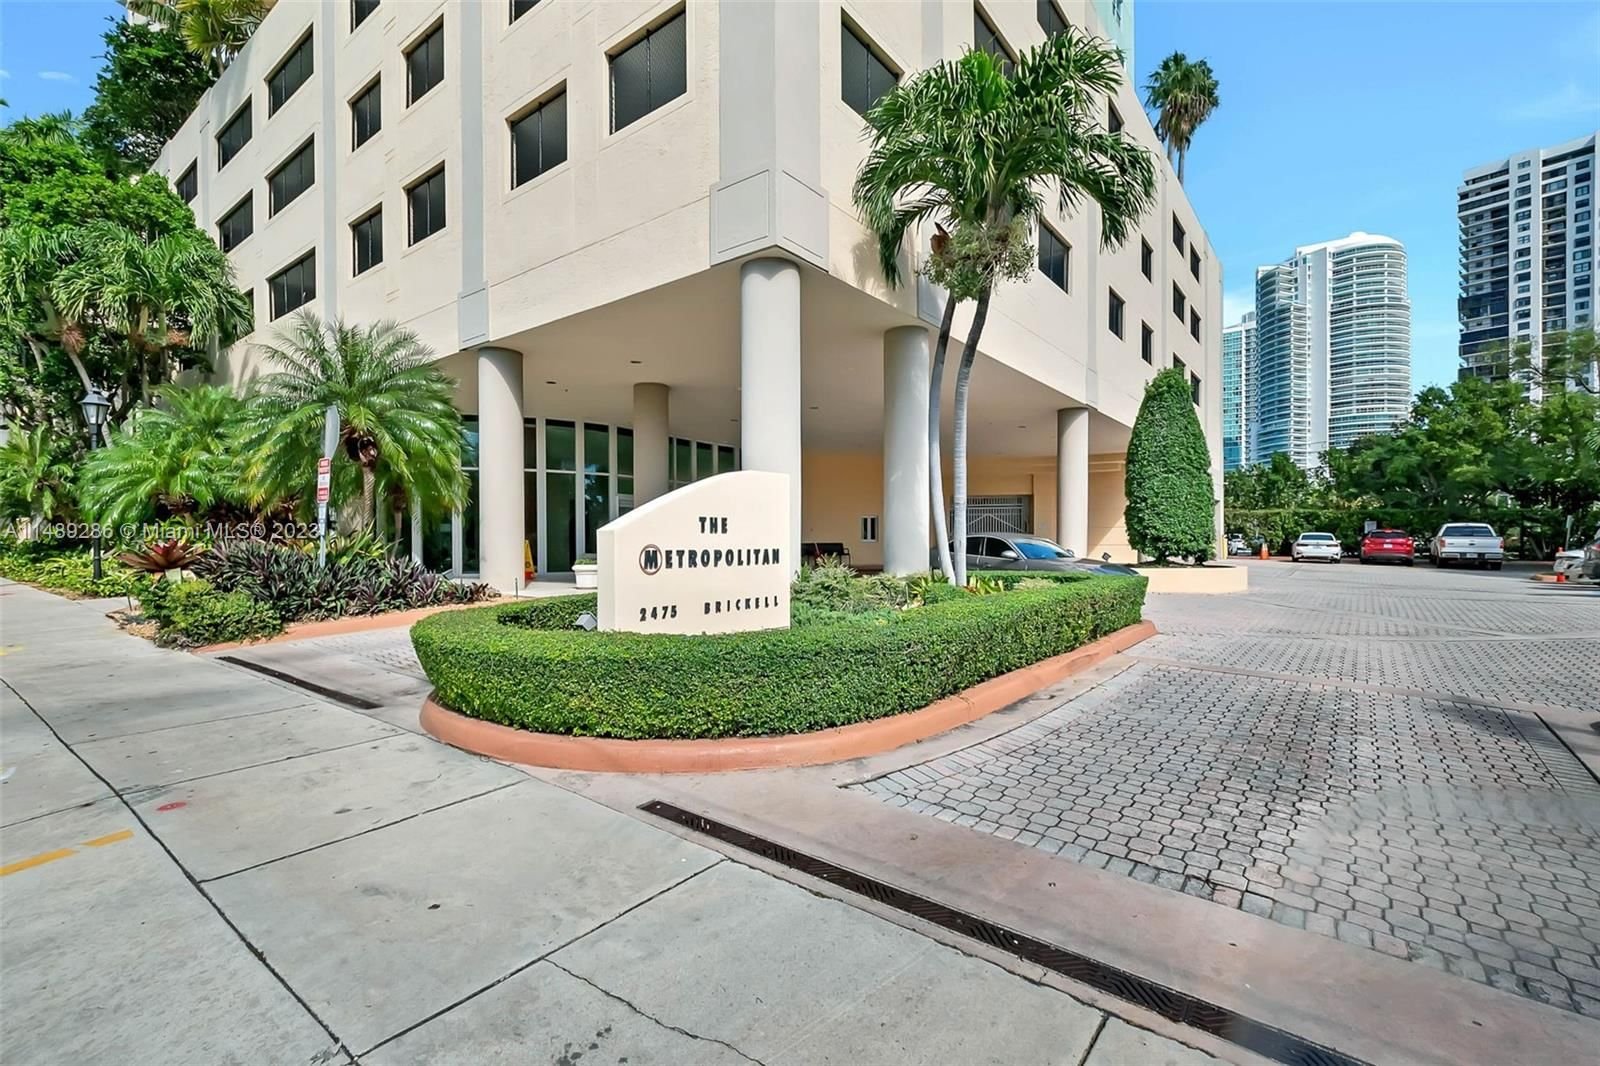 Real estate property located at 2475 Brickell Ave #2310, Miami-Dade County, THE METROPOLITAN CONDO, Miami, FL